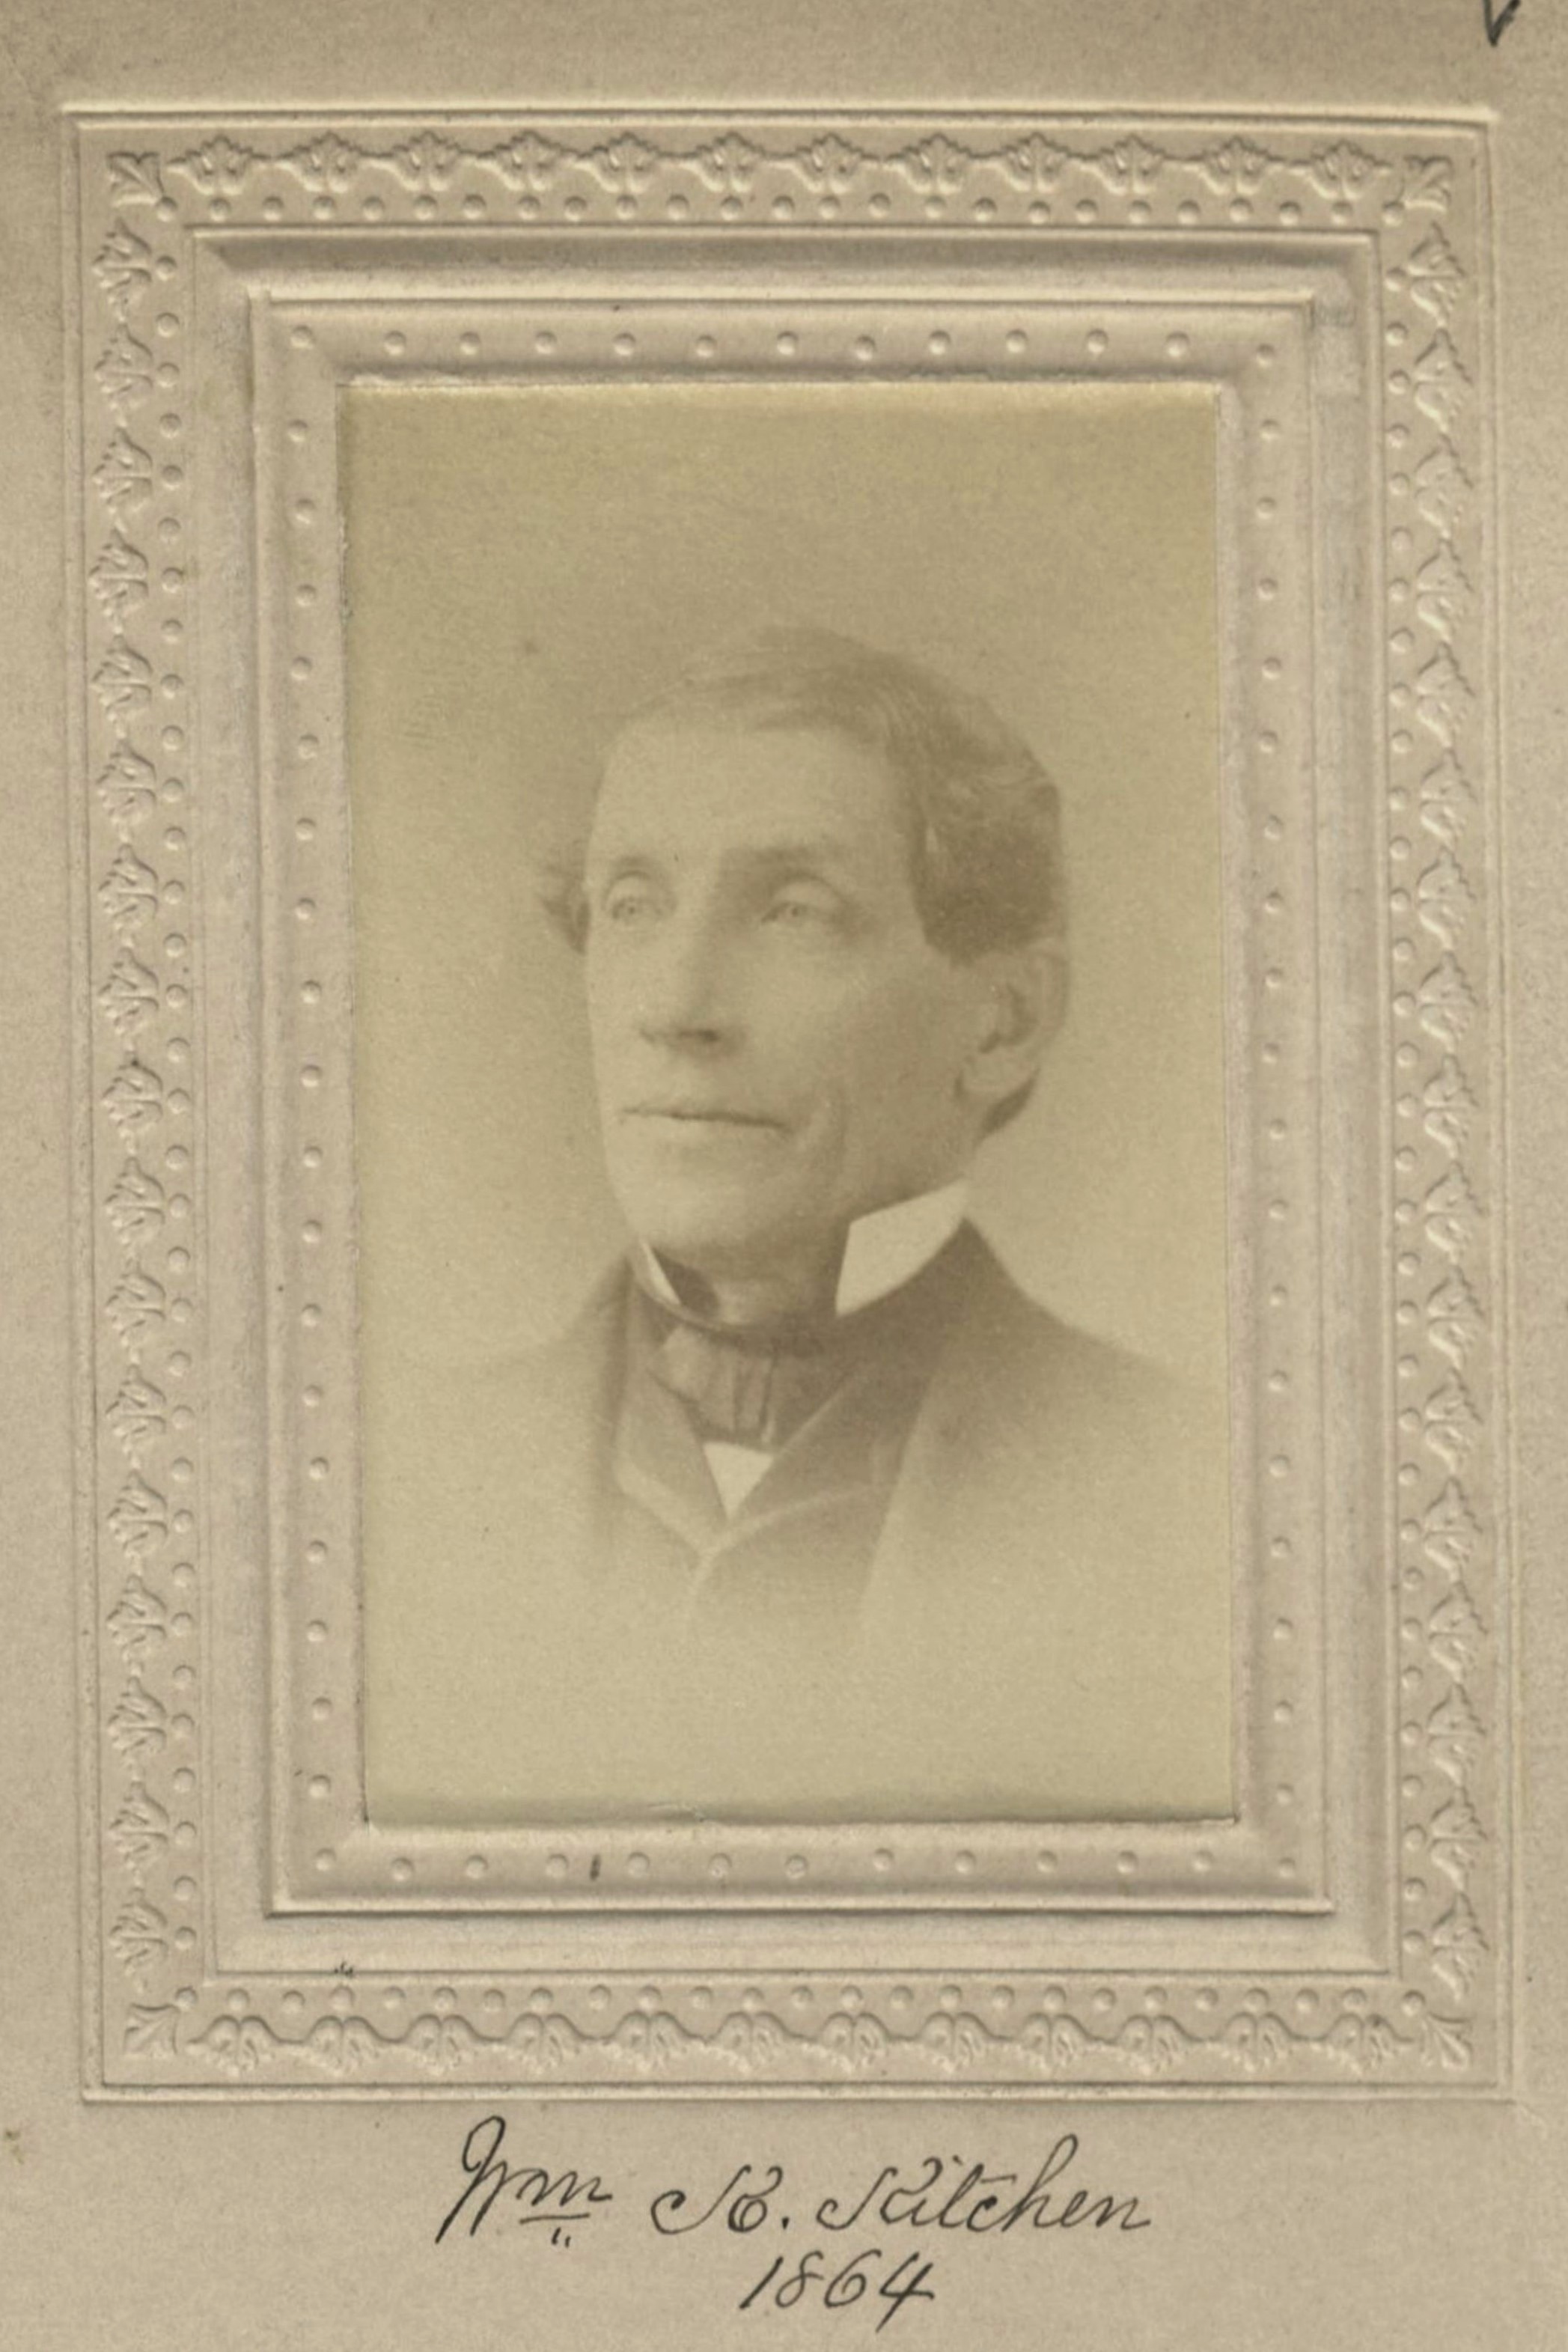 Member portrait of William K. Kitchen